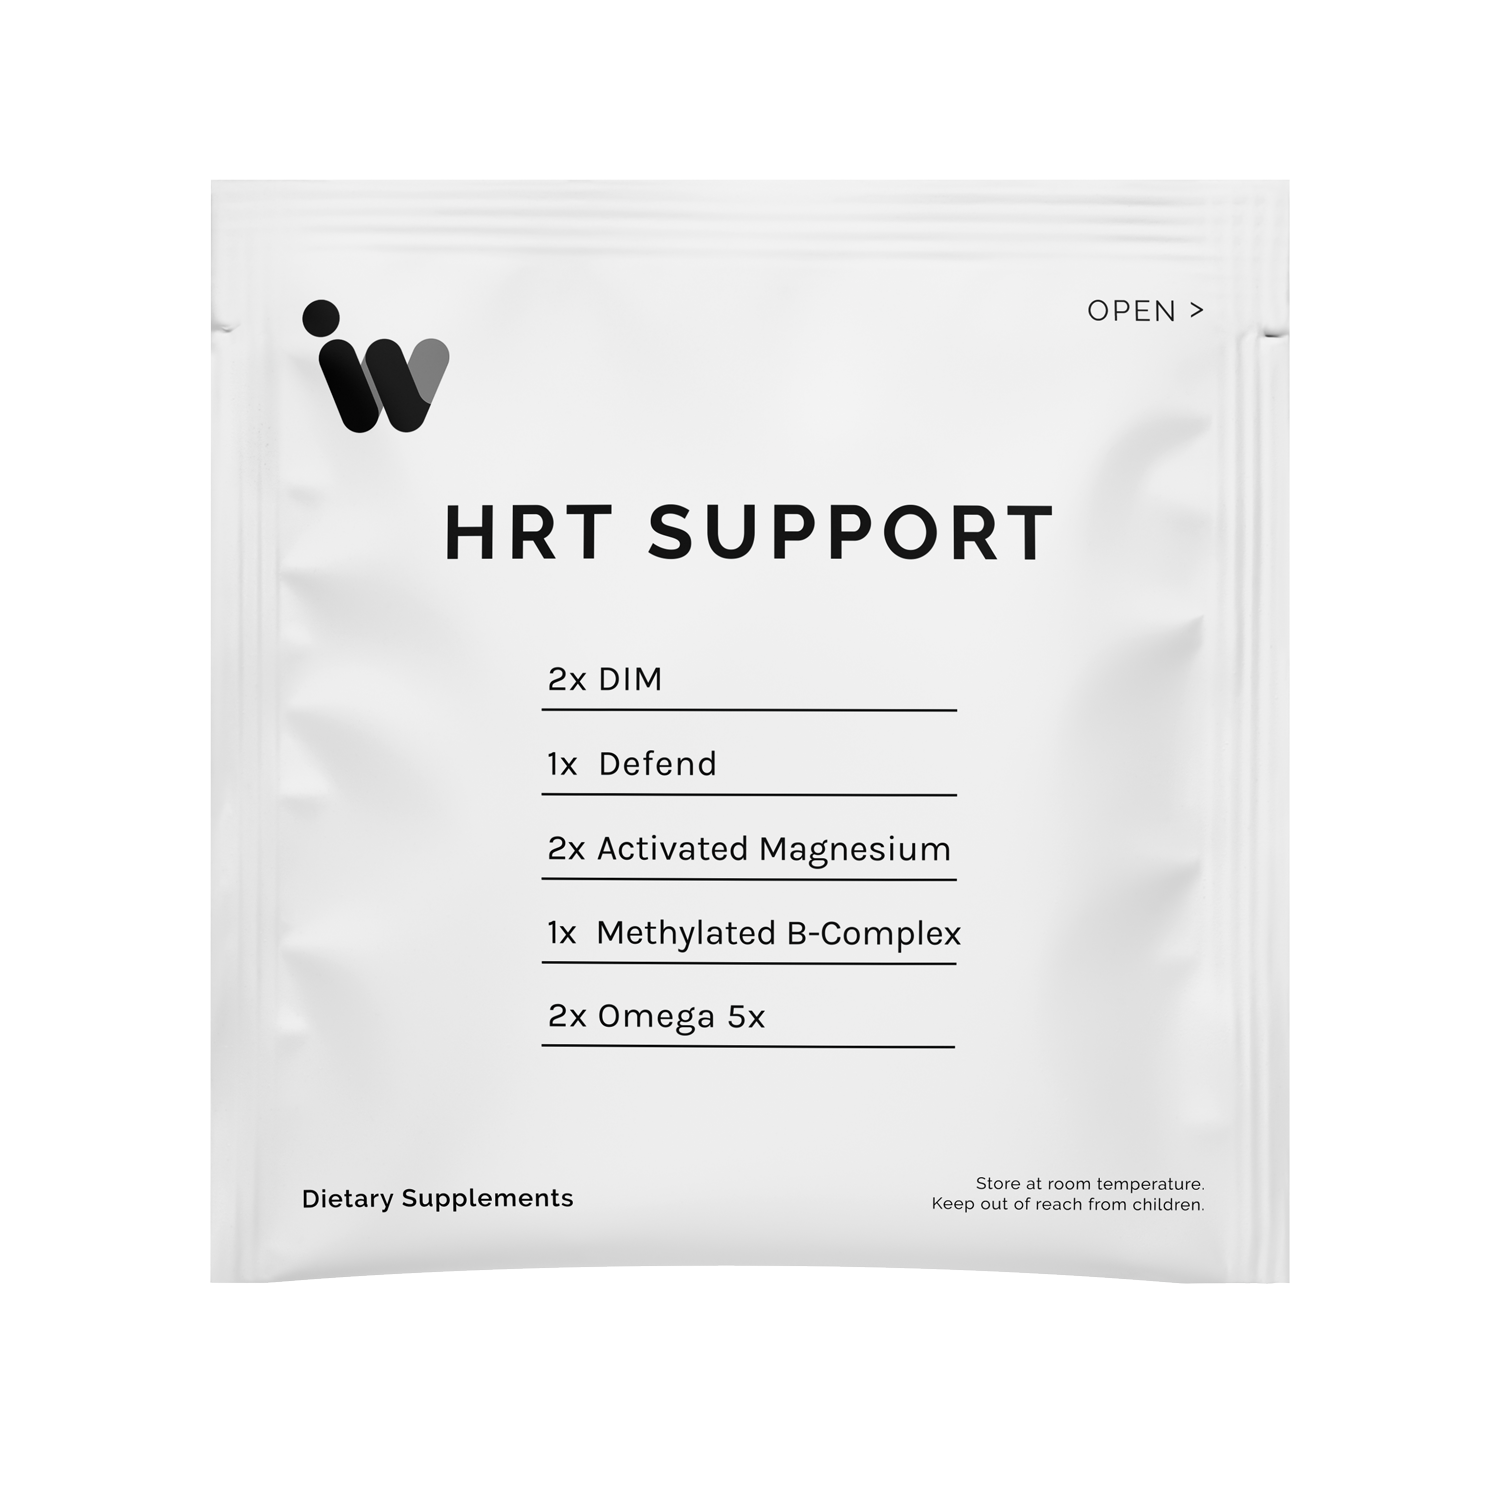 HRT SUPPORT